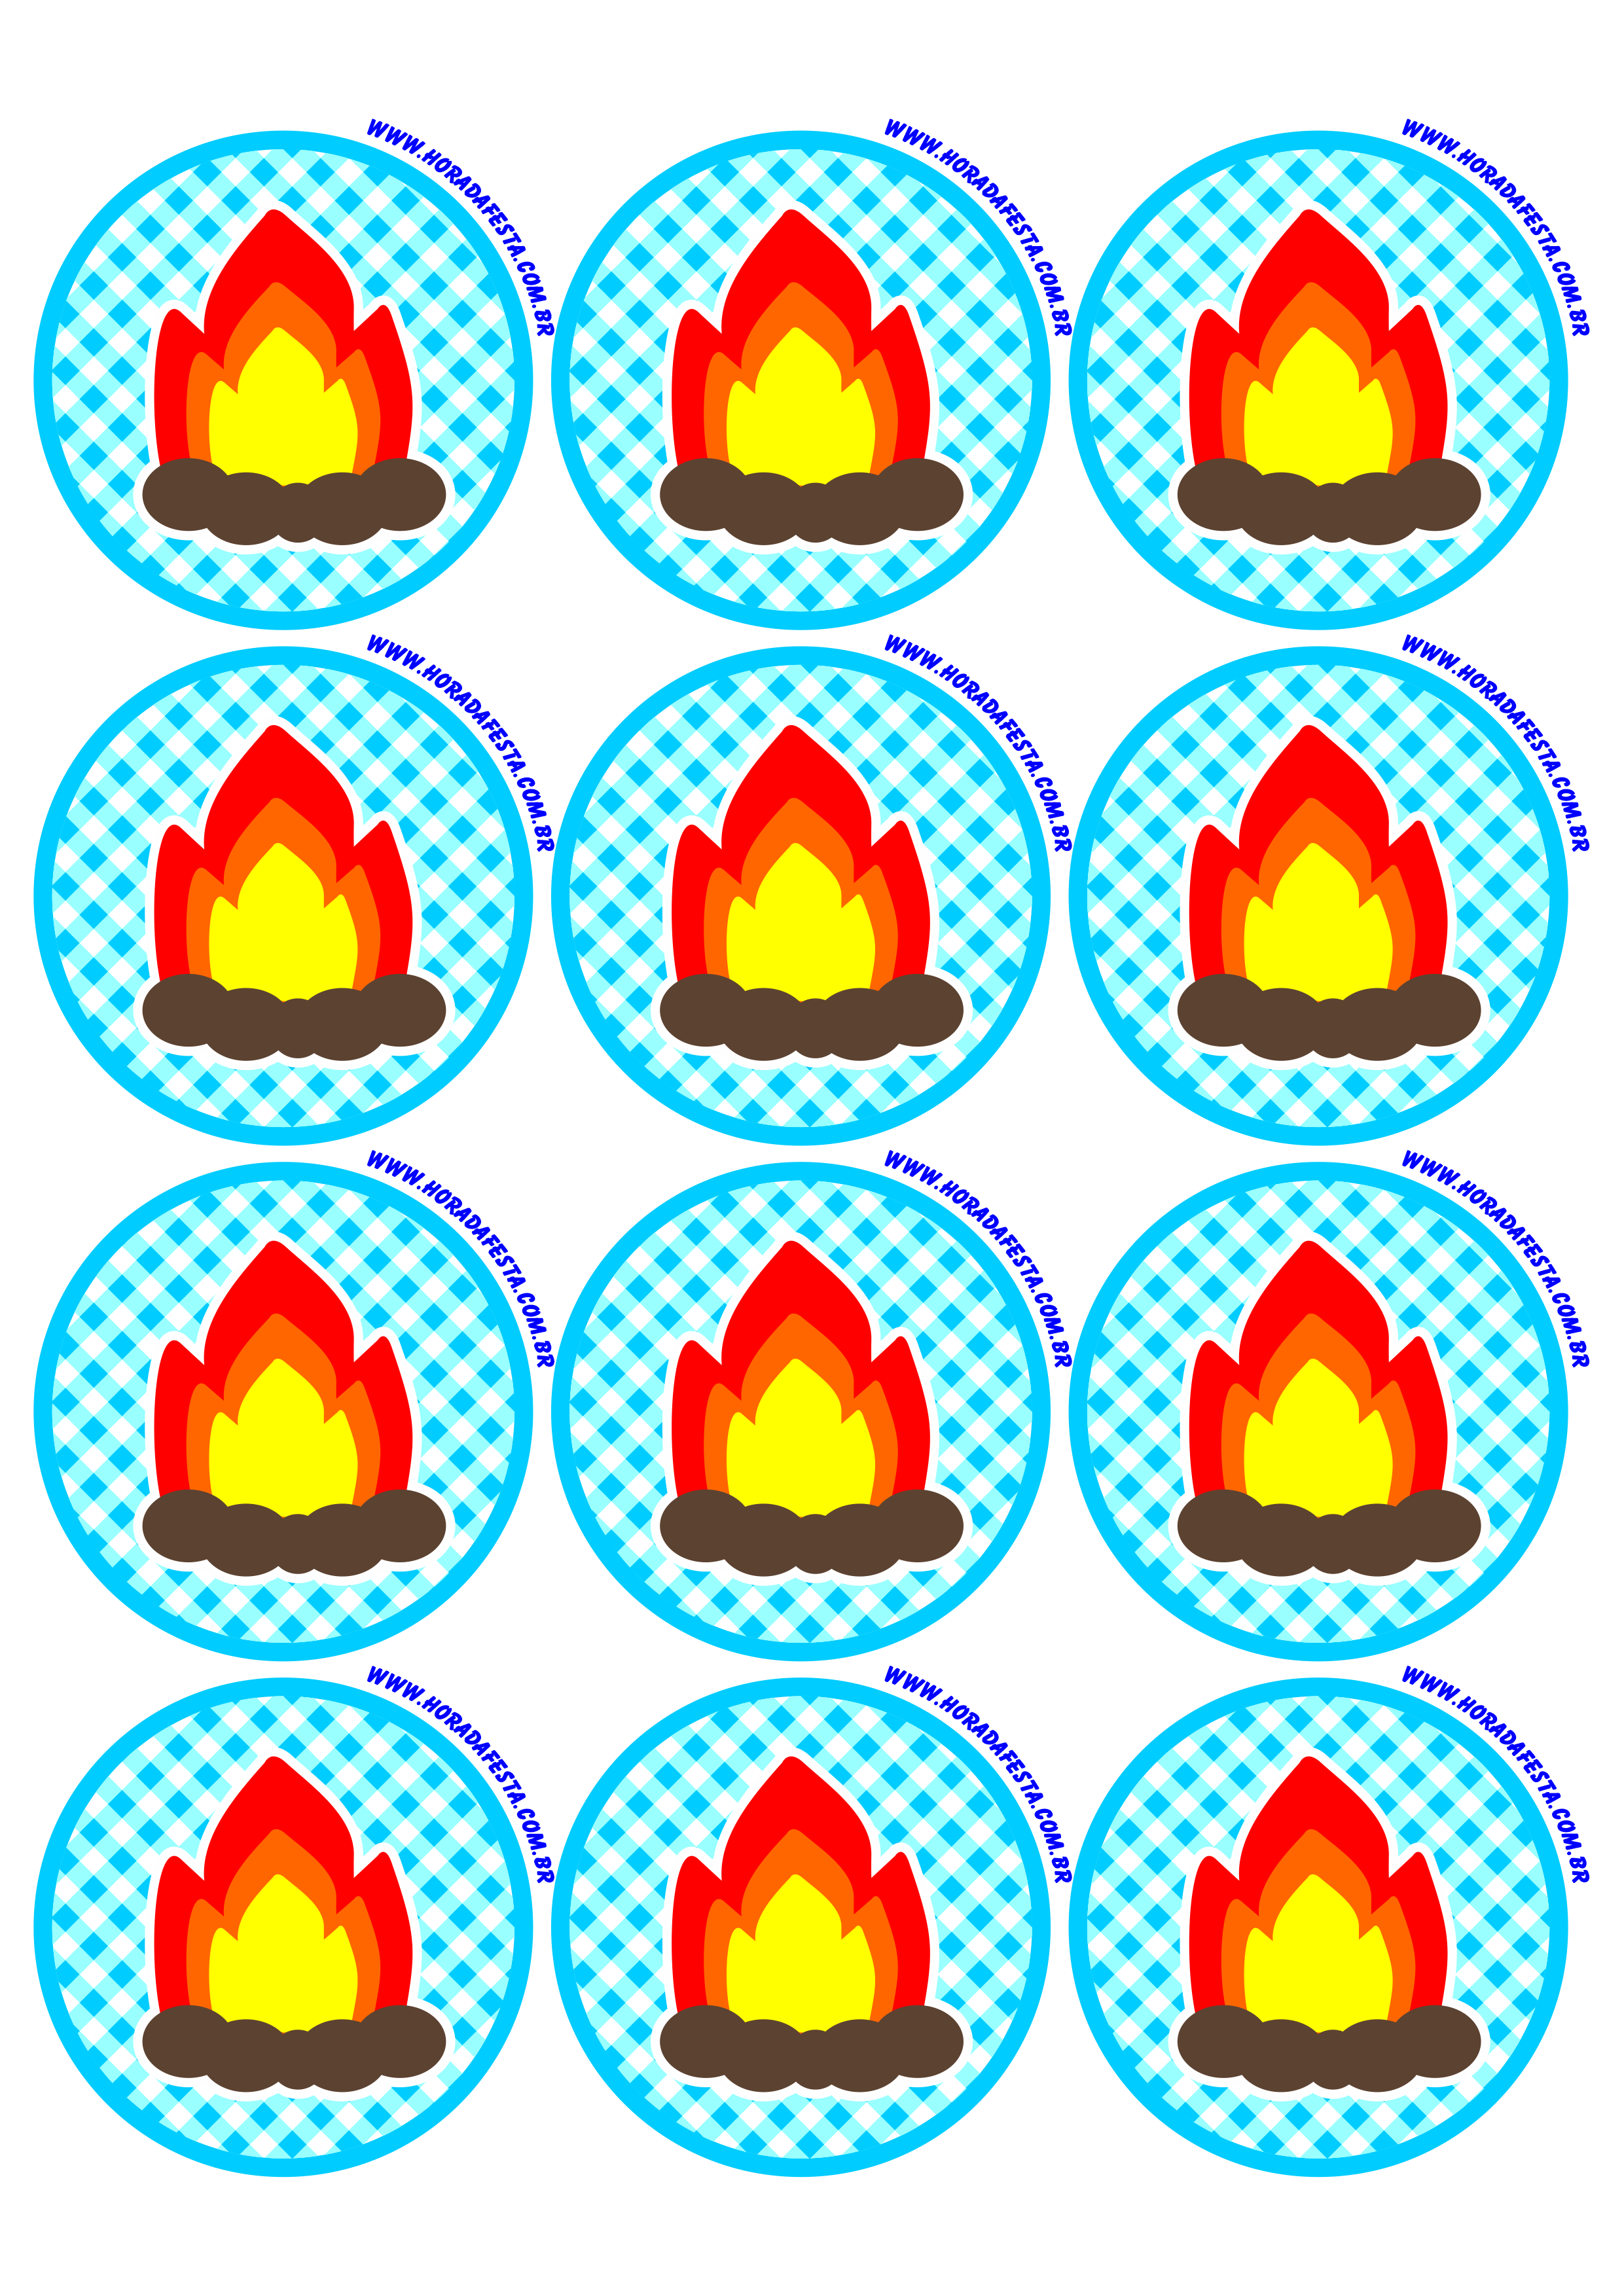 Festa junina logo adesivo redondo tag sticker azul fogueira de são joão 12 imagens png